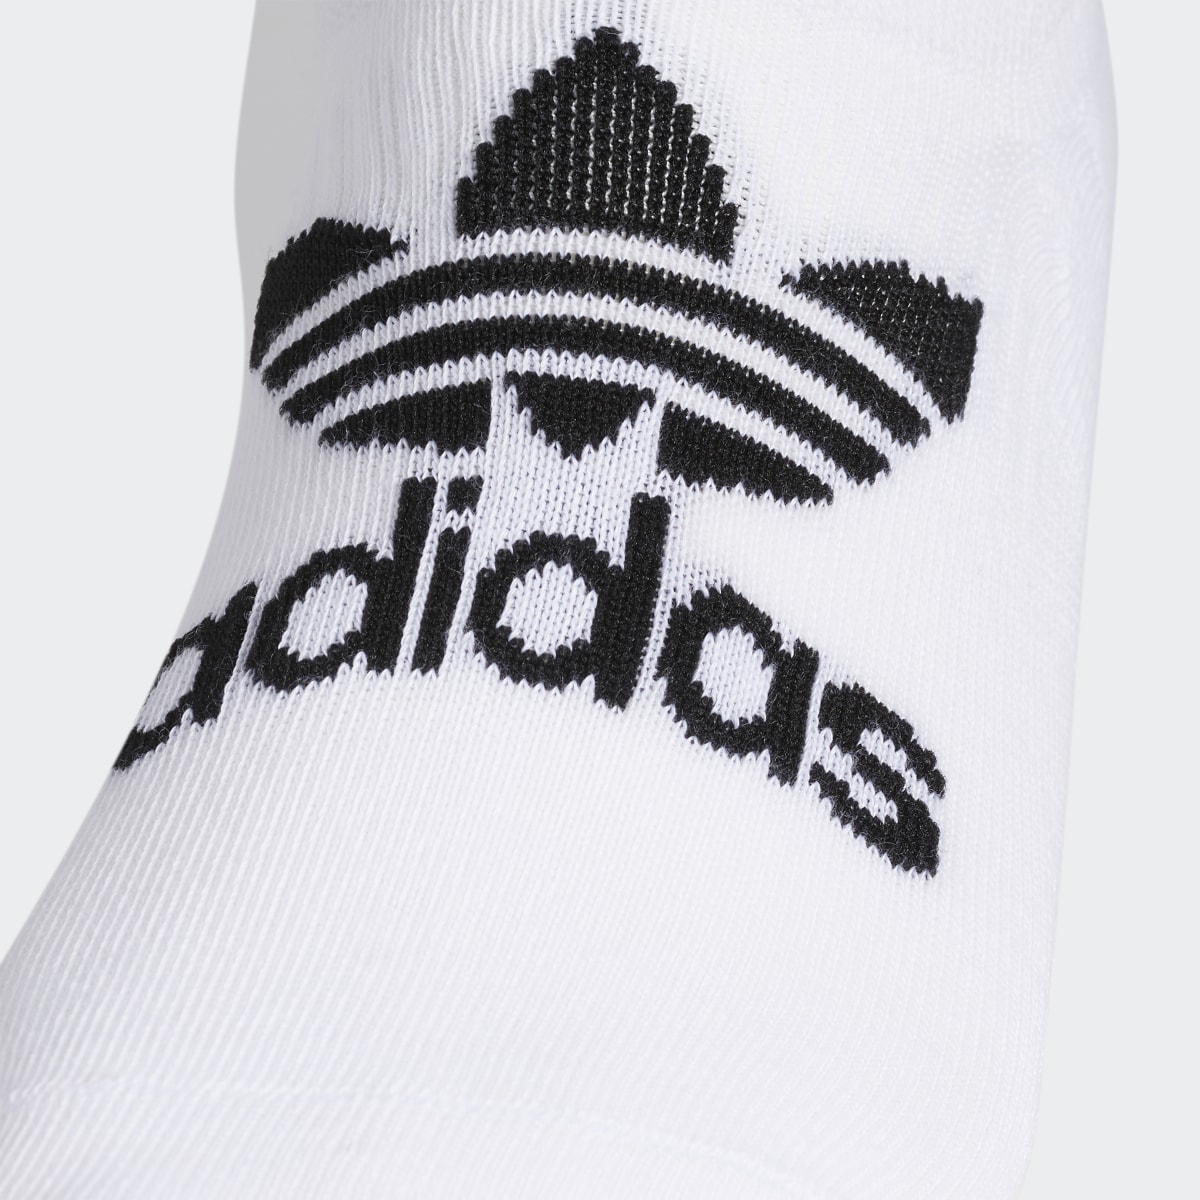 Adidas Classic Superlite Super-No-Show Socks 6 Pairs. 4